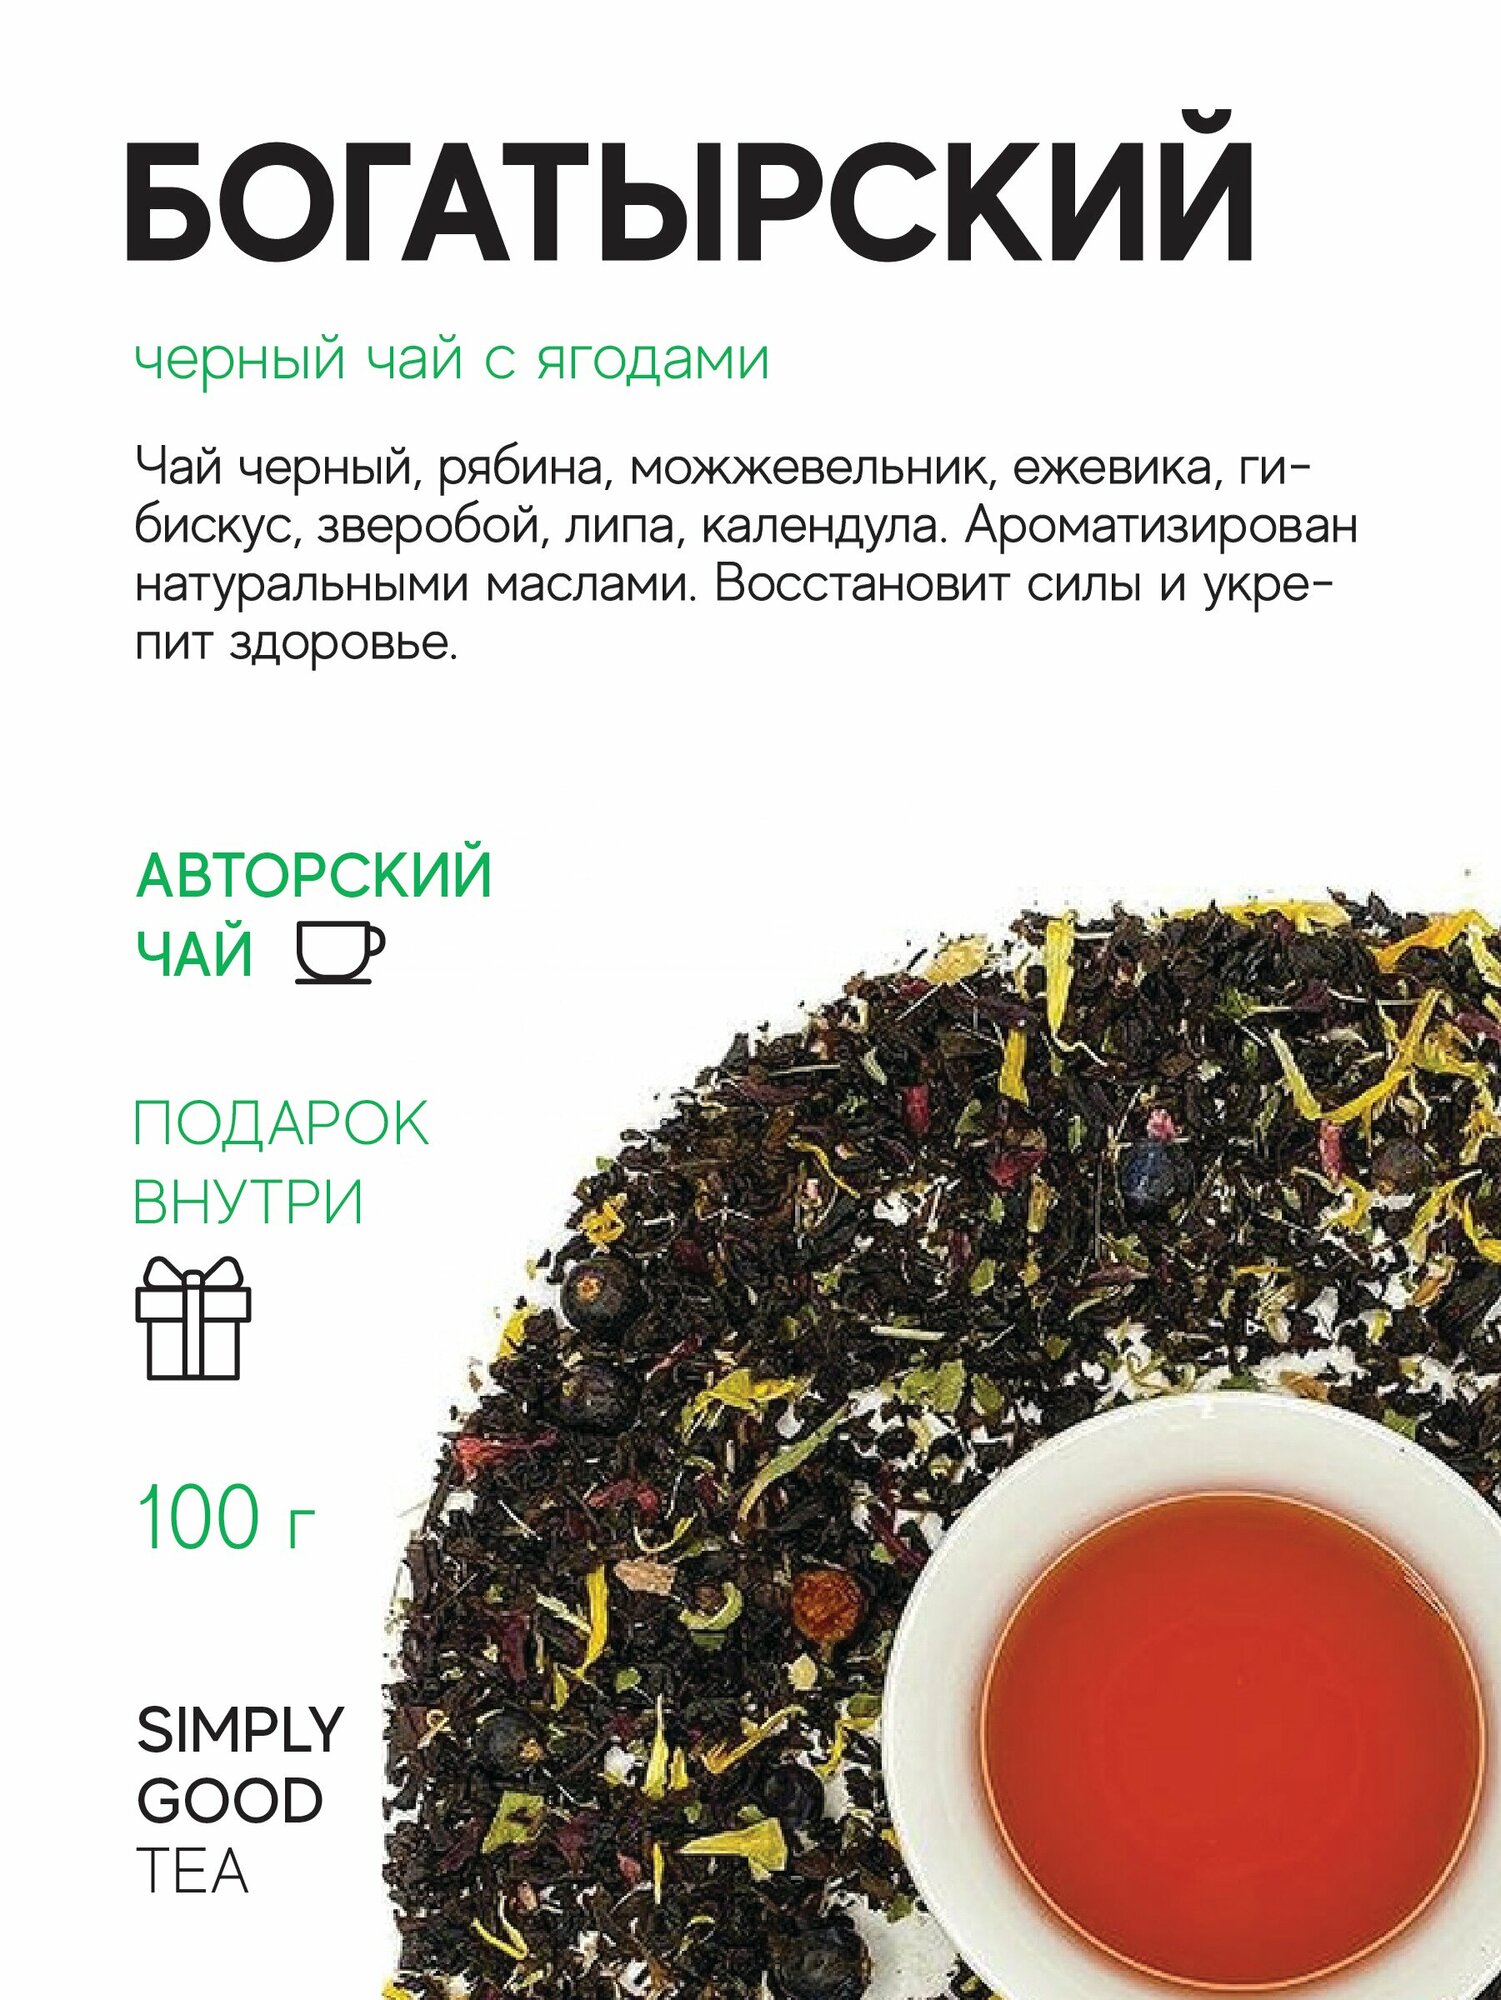 Черный чай с добавками Богатырский (100 г.)